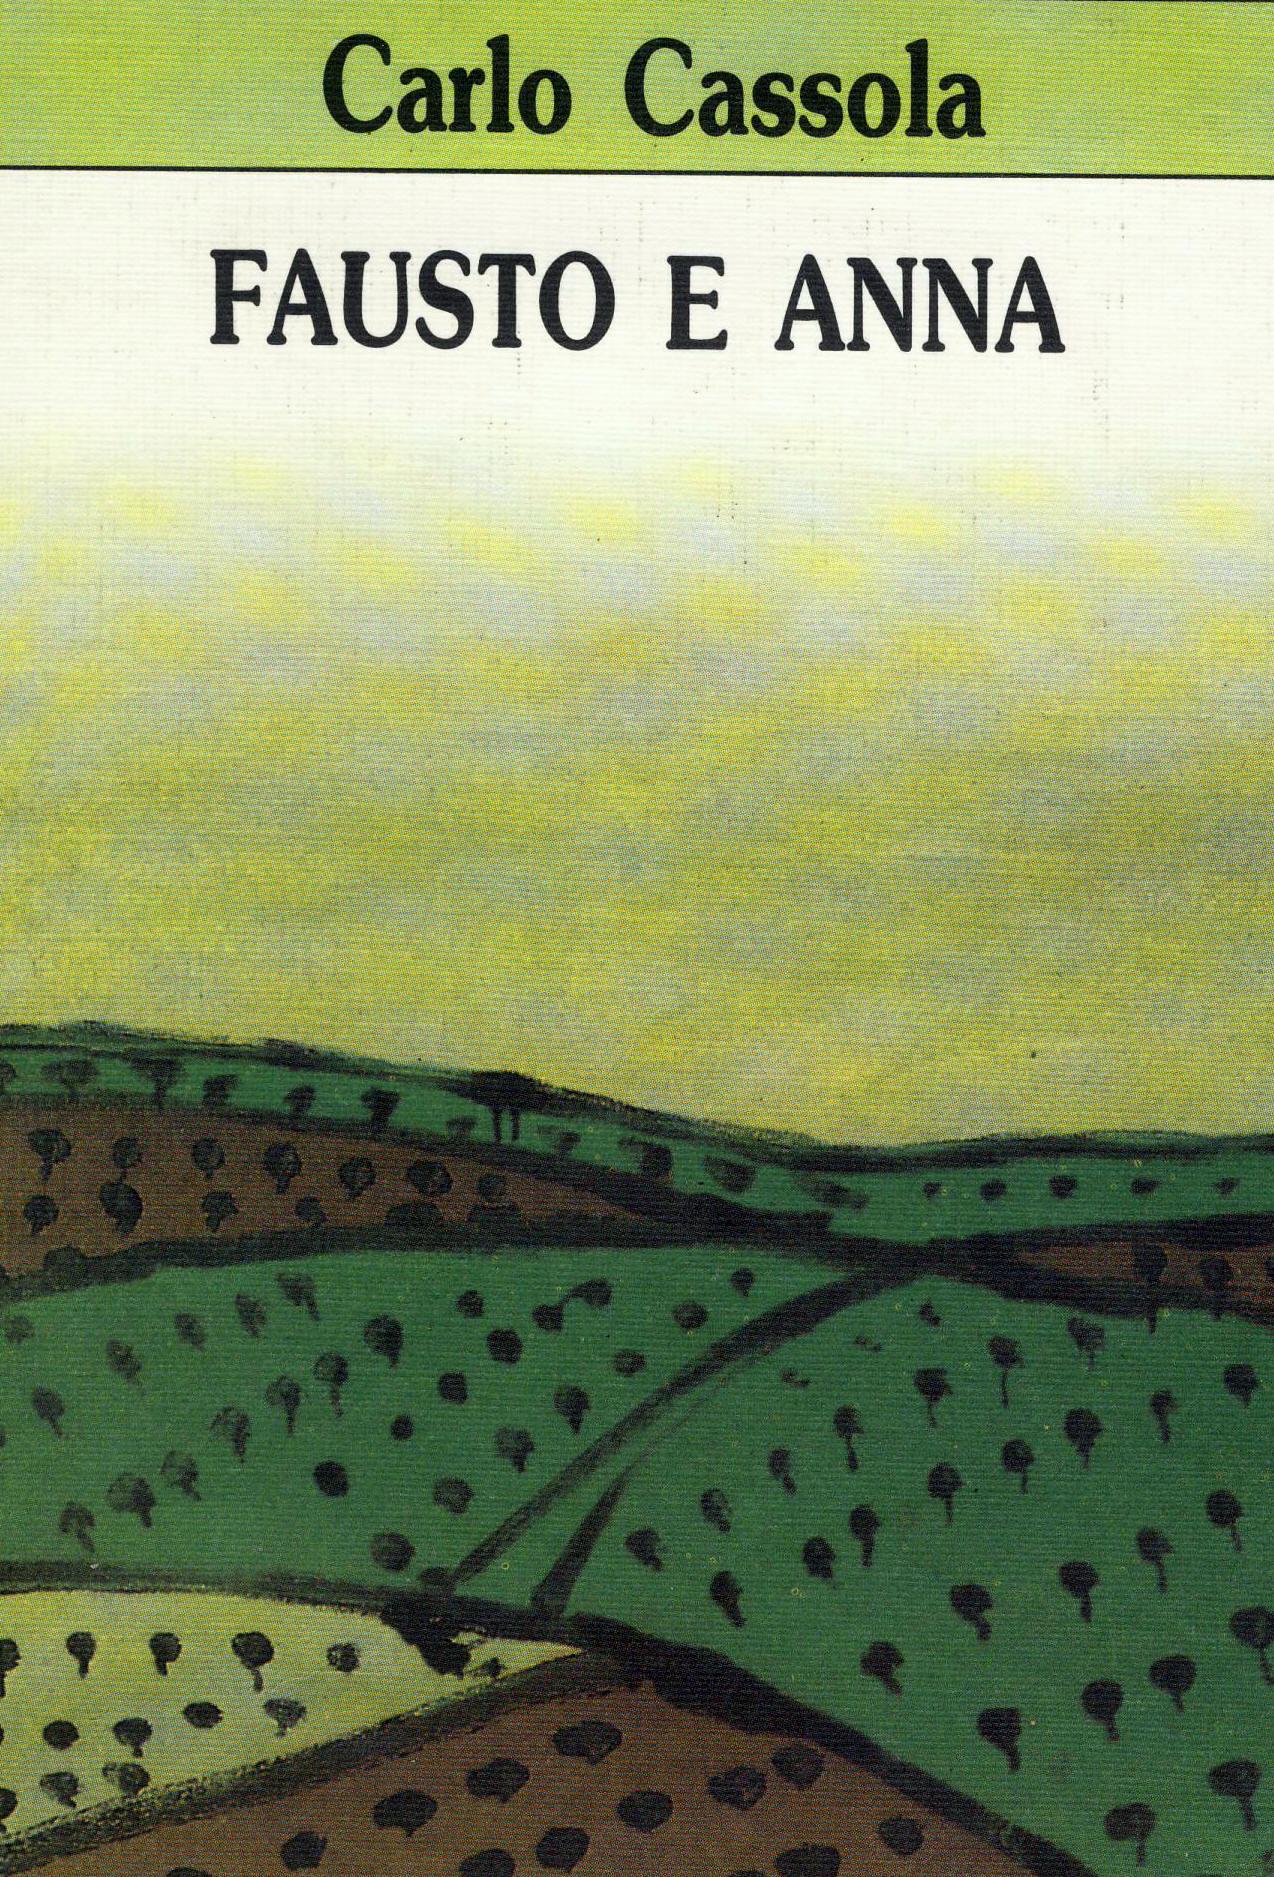 Carlo Cassola Fausto E Anna Anpi 25 Aprile Milano